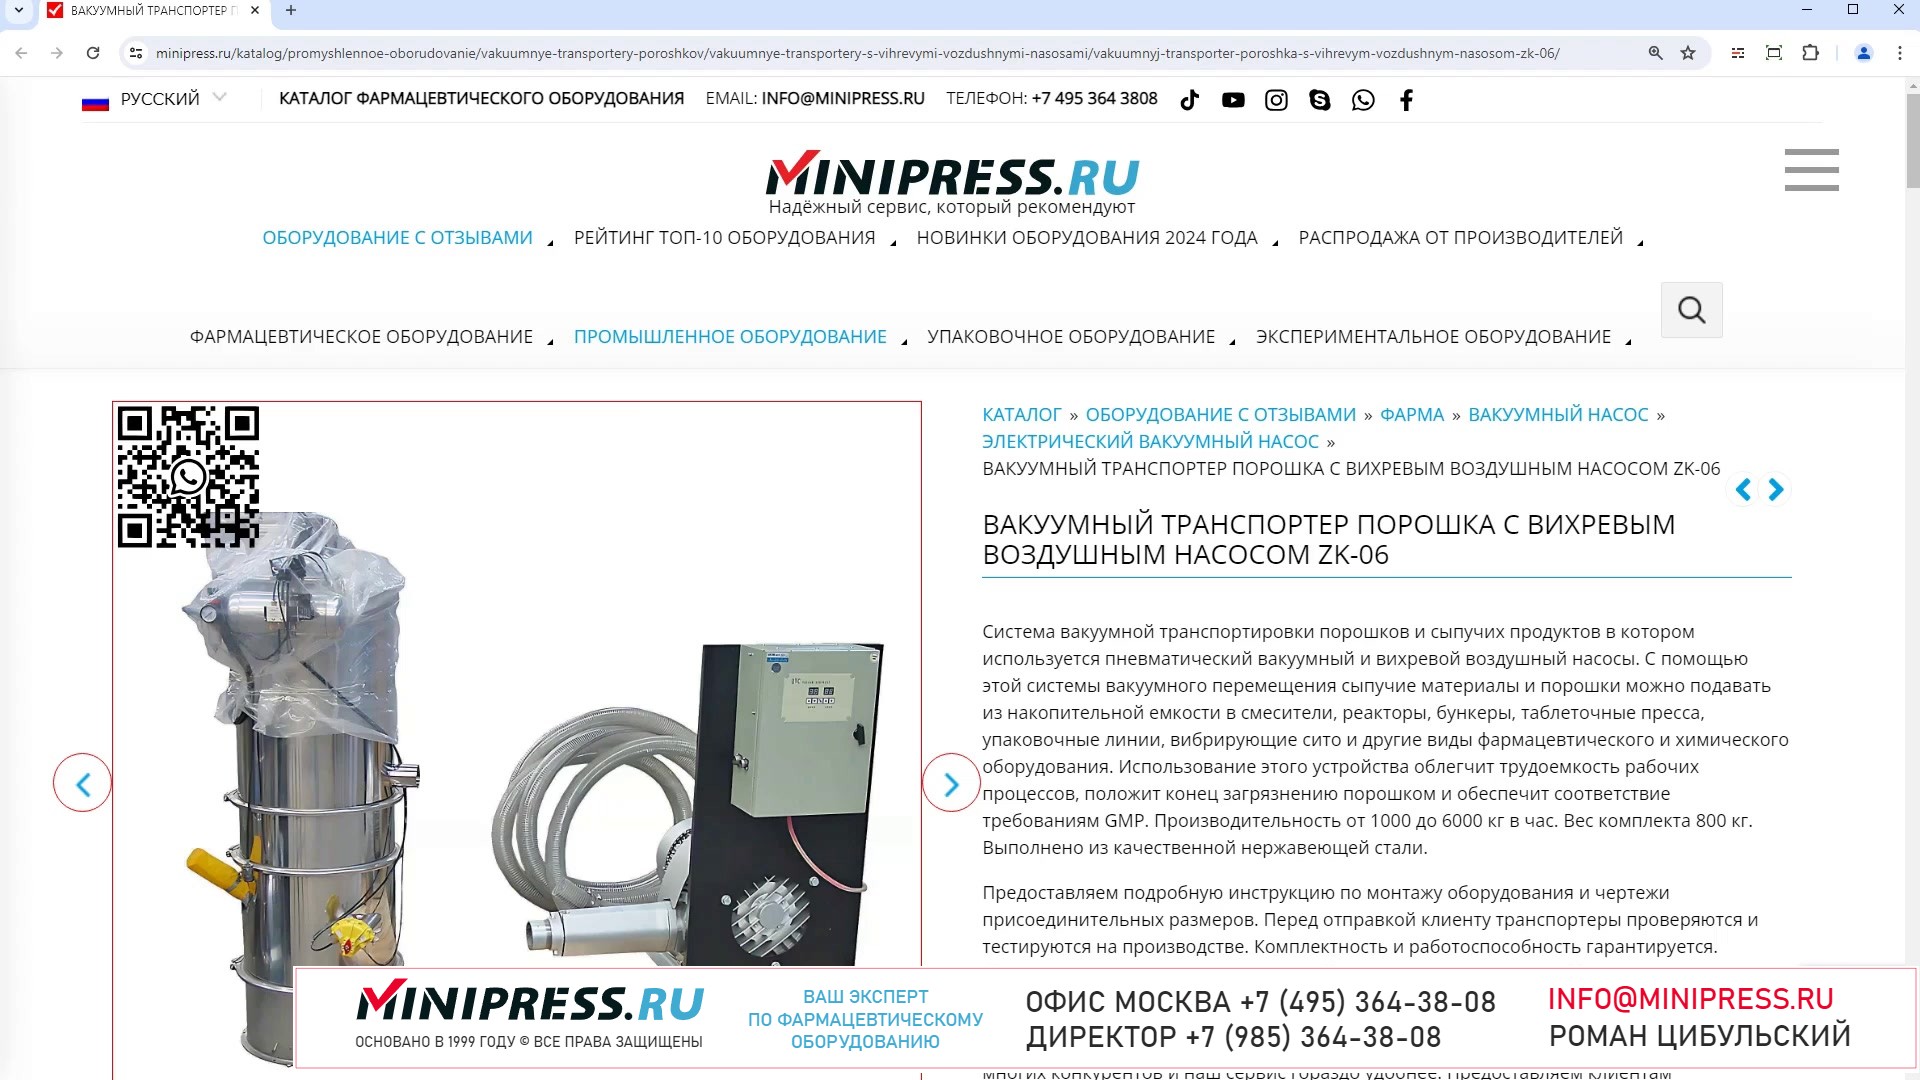 Minipress.ru Вакуумный транспортер порошка с вихревым воздушным насосом ZK-06